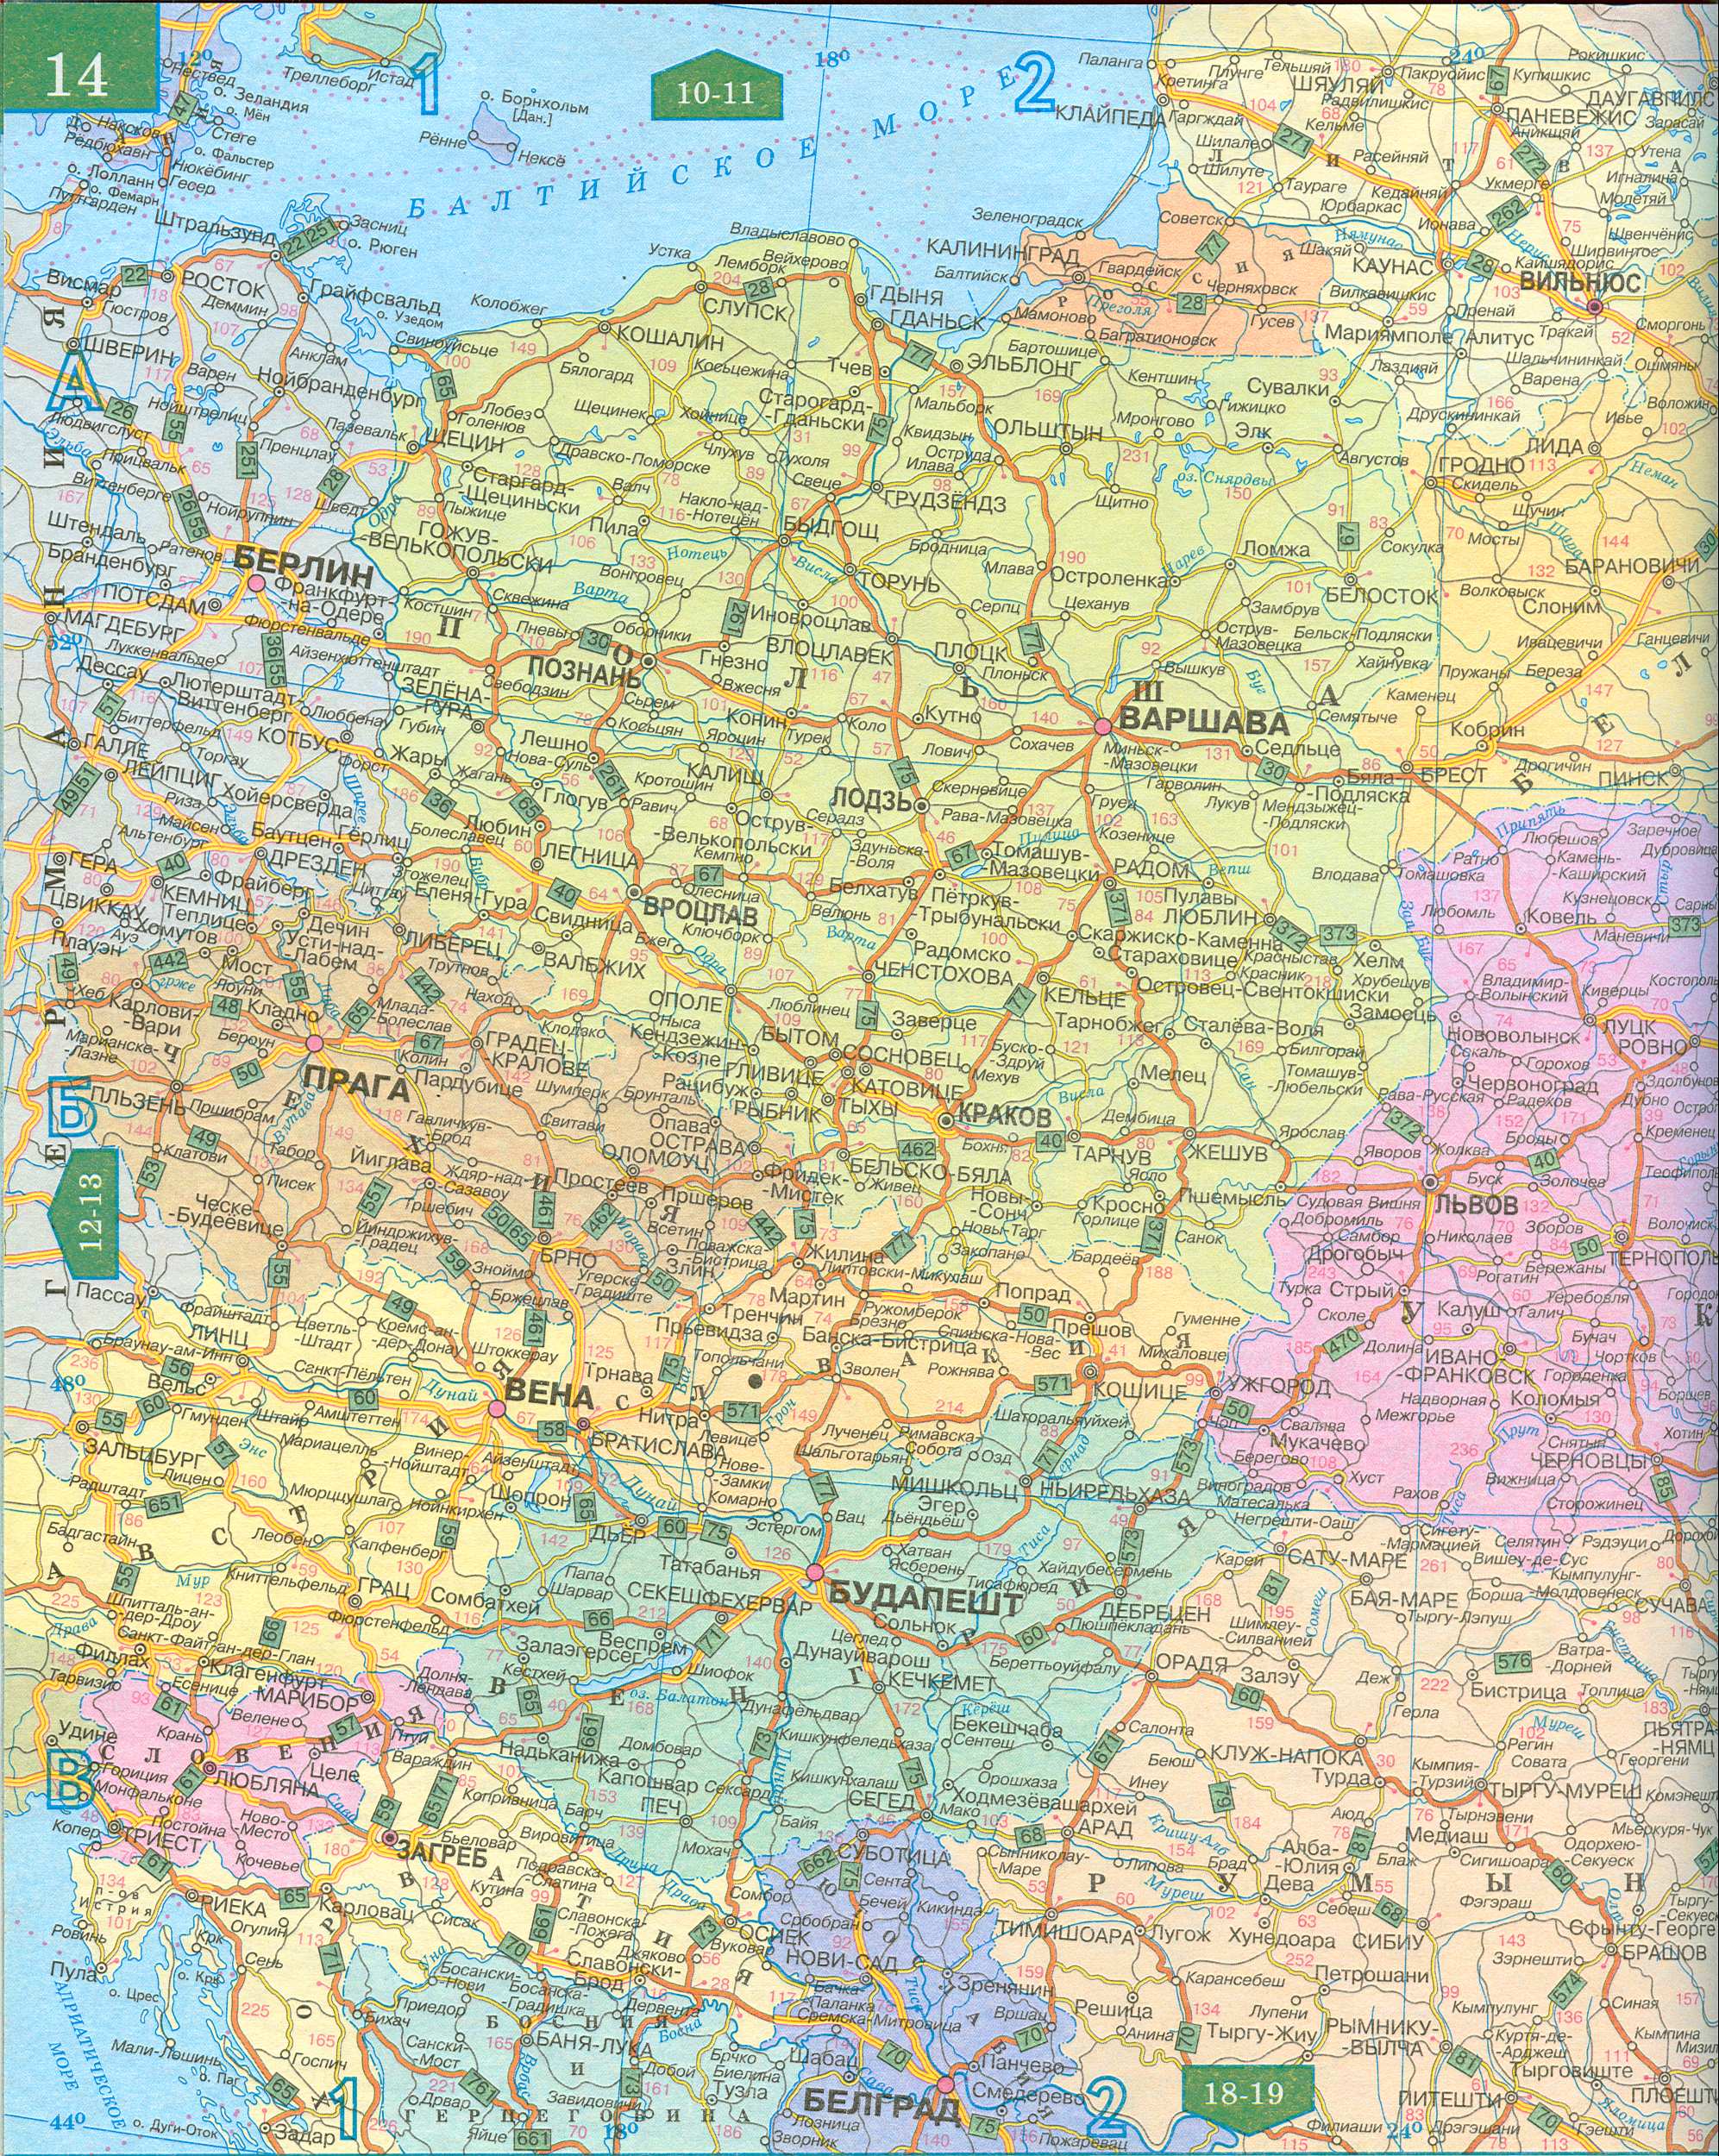 Автомобильная карта восточной Европы на русском языке. Большая автомобильная карта - Восточная Европа, масштаб 1см:50км, A0 - 